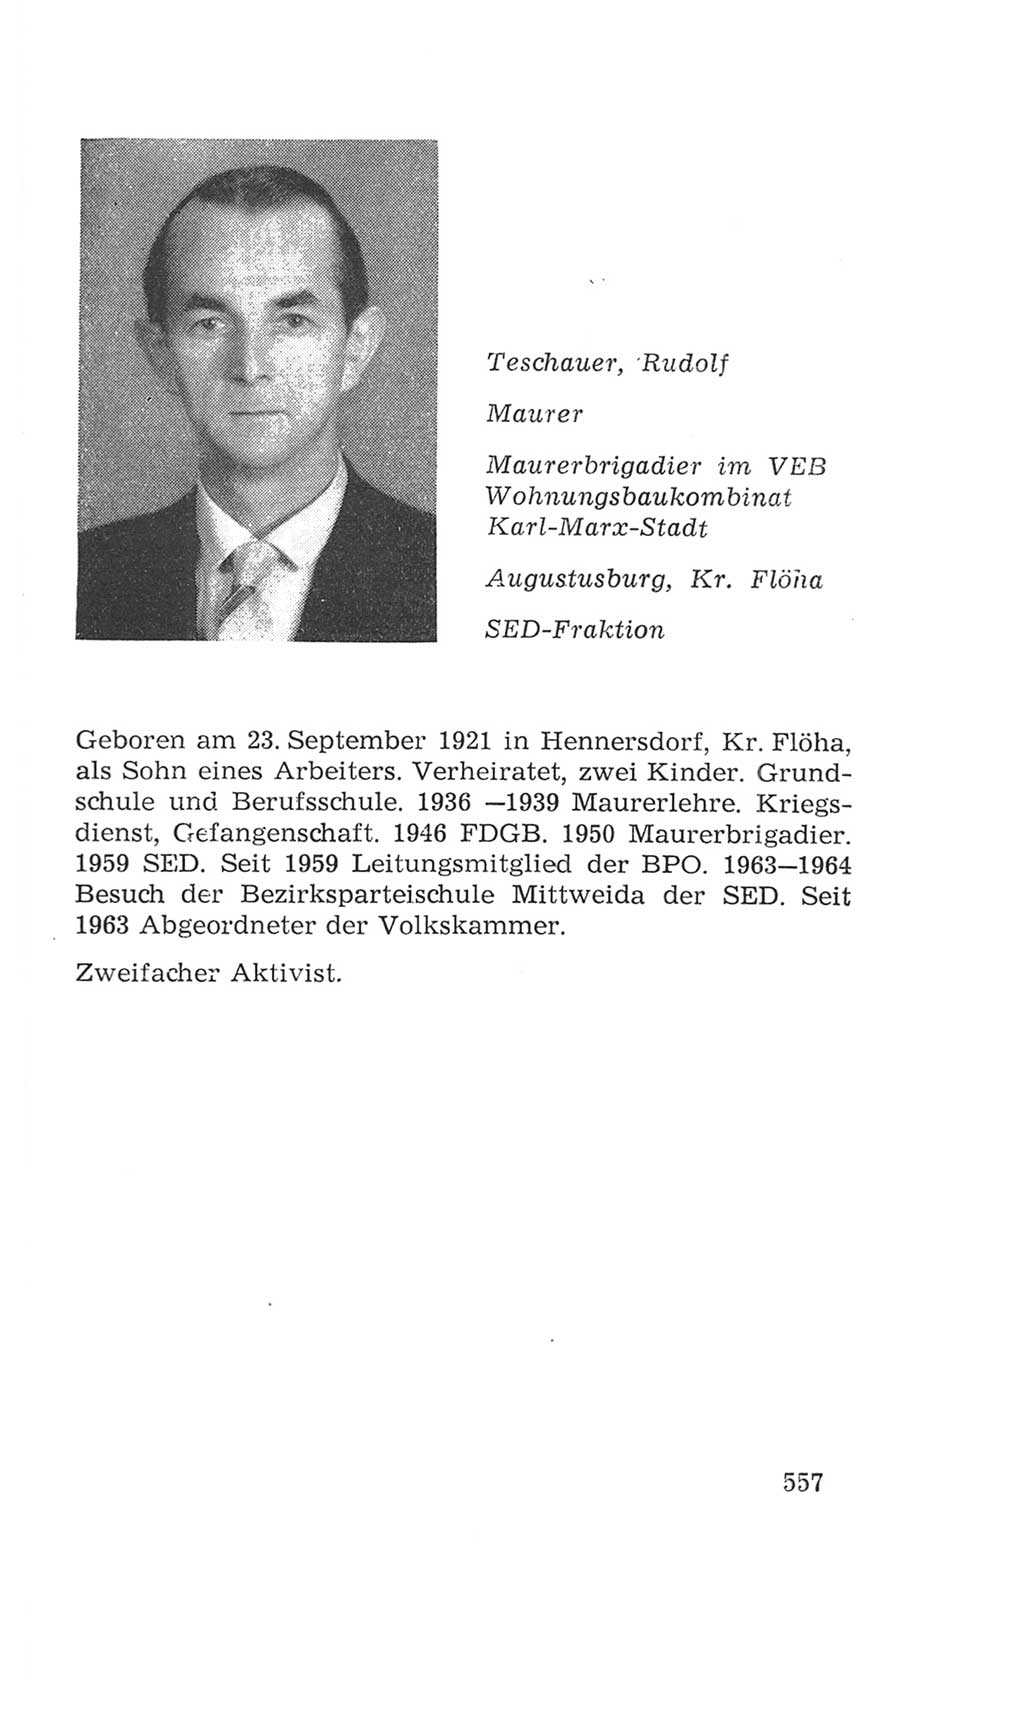 Volkskammer (VK) der Deutschen Demokratischen Republik (DDR), 4. Wahlperiode 1963-1967, Seite 557 (VK. DDR 4. WP. 1963-1967, S. 557)